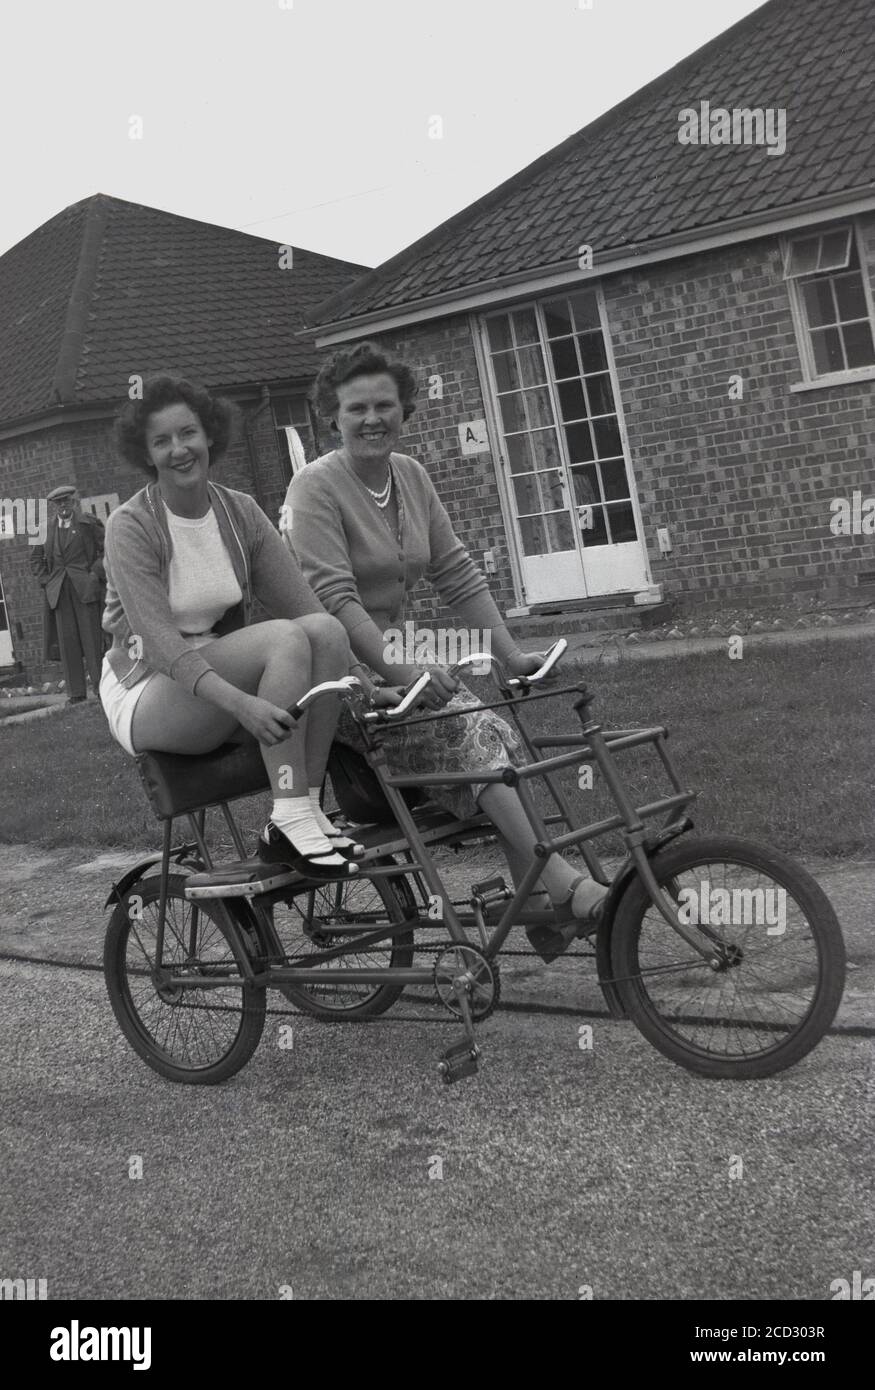 Années 1950, historique, deux dames assises ensemble sur un tandem ou tricycle social de deux places sur un chemin à l'extérieur d'un chalet dans un camp de vacances à Hayling Island, Hampshire, Angleterre, Royaume-Uni. Ces robustes bicyclettes à trois roues, où deux amis ou membres de la famille pouvaient s'asseoir côte à côte en faisant du vélo, étaient une forme de transport populaire et amusant pour se déplacer dans la grande étendue d'un camp de vacances à cette époque. Banque D'Images